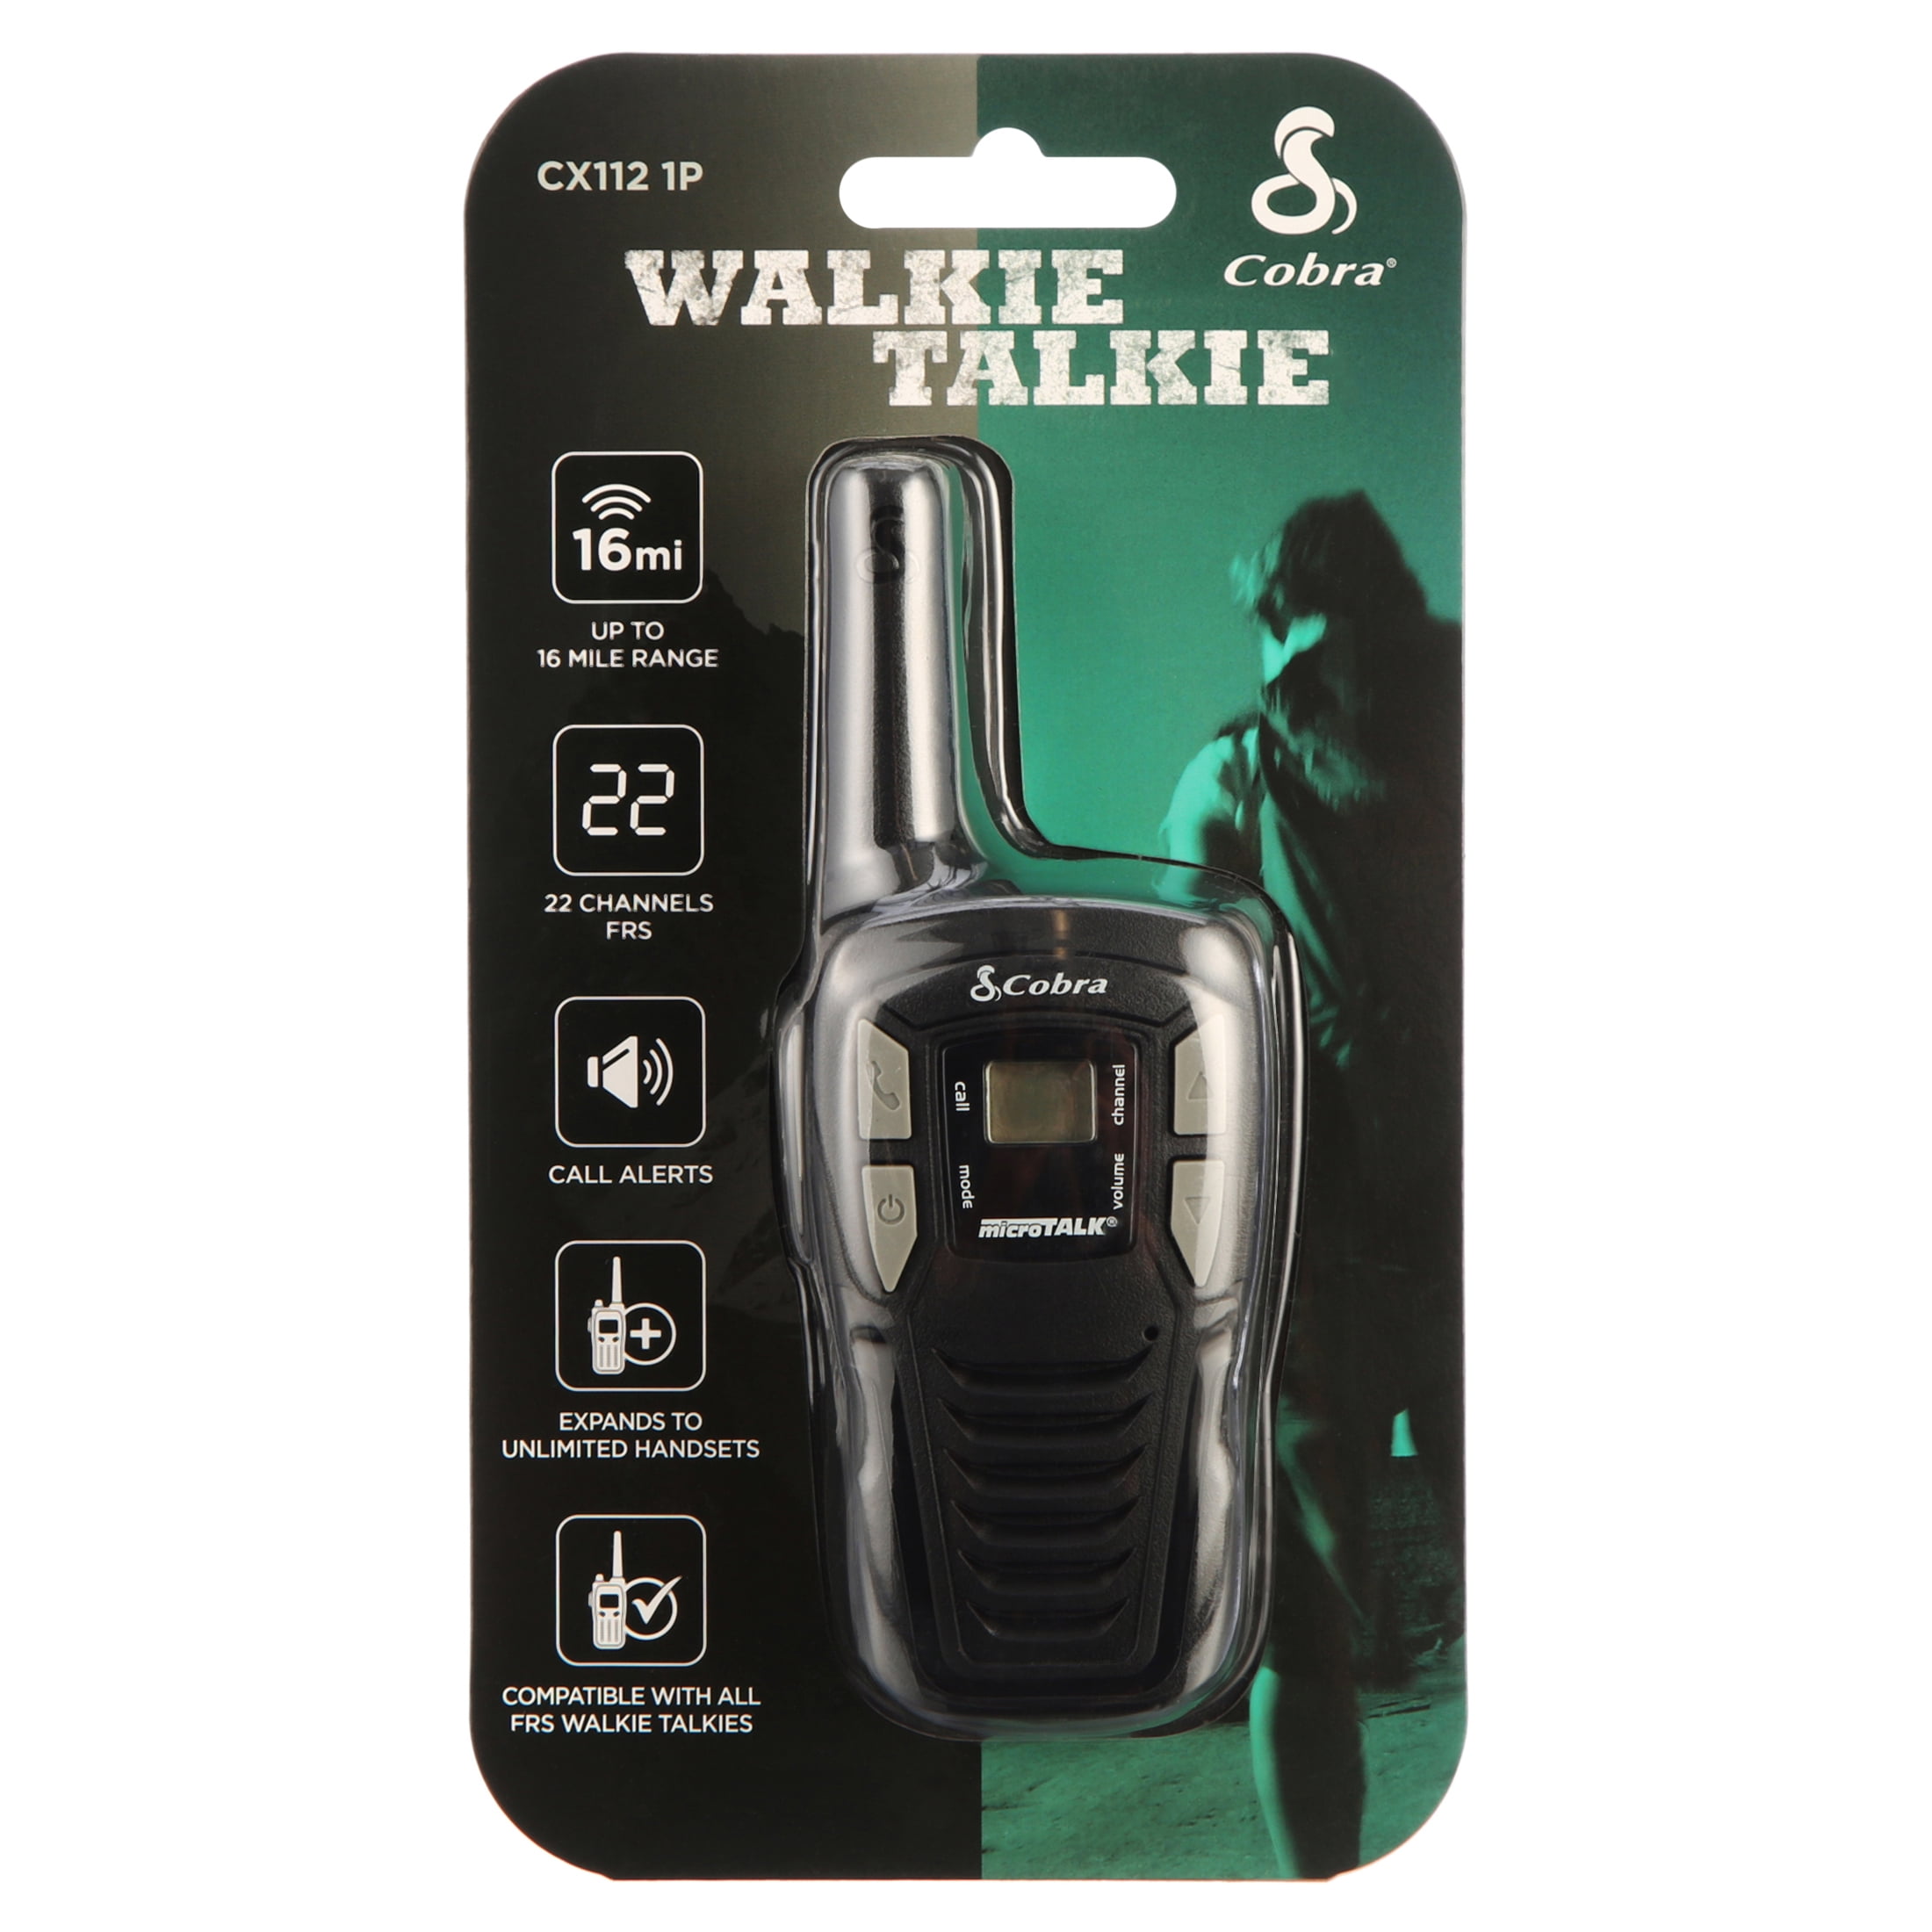 Cobra Cx112 Walkie Talkie Two-Way Radio